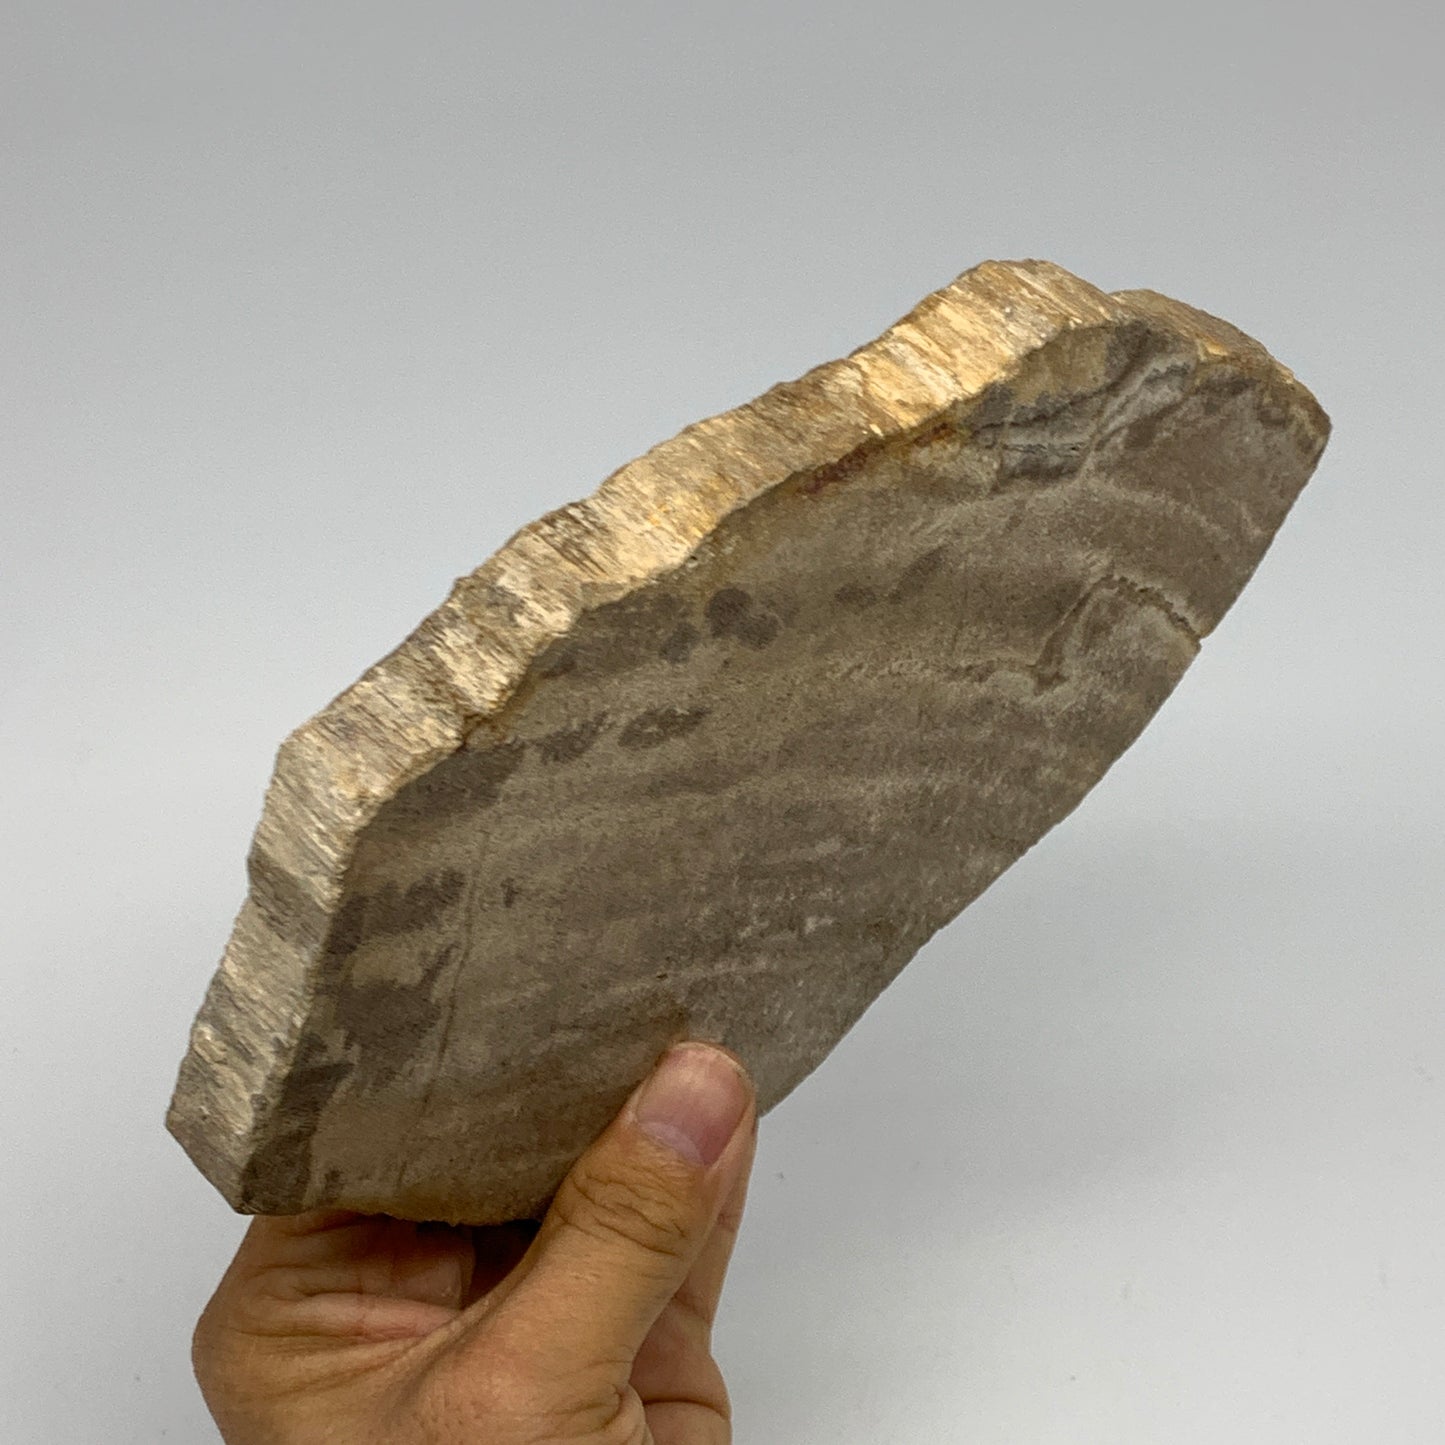 645g,7.5"x4.9"x0.7" Petrified Wood Slab Tree Branch Specimen, Minerals, B22678